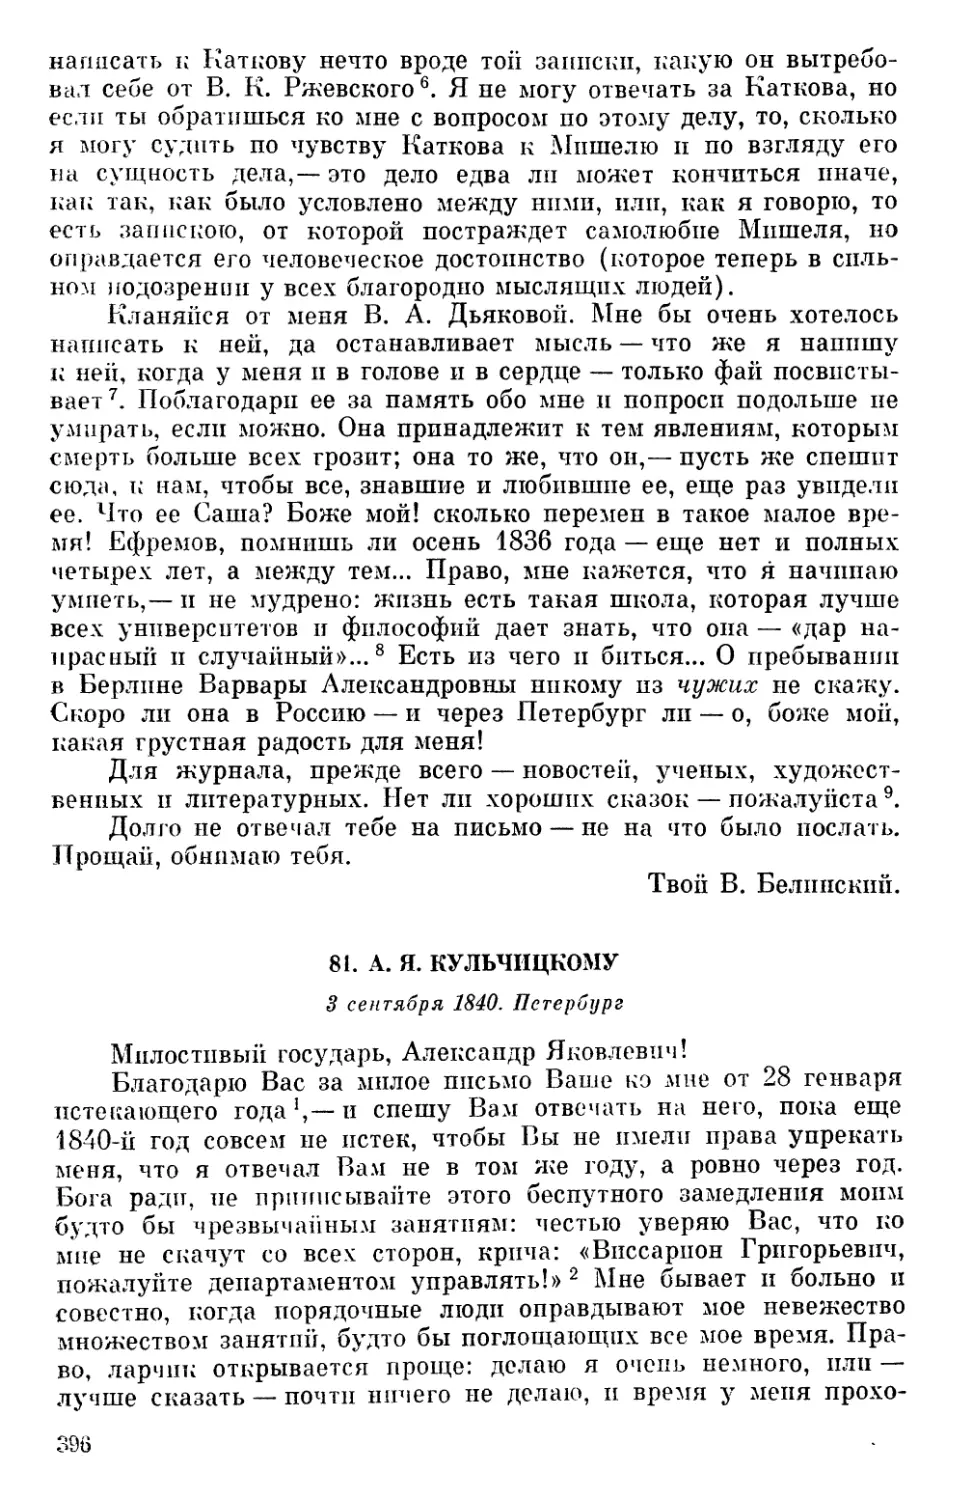 81. А. Я. Кульчицкому. 3 сентября 1840